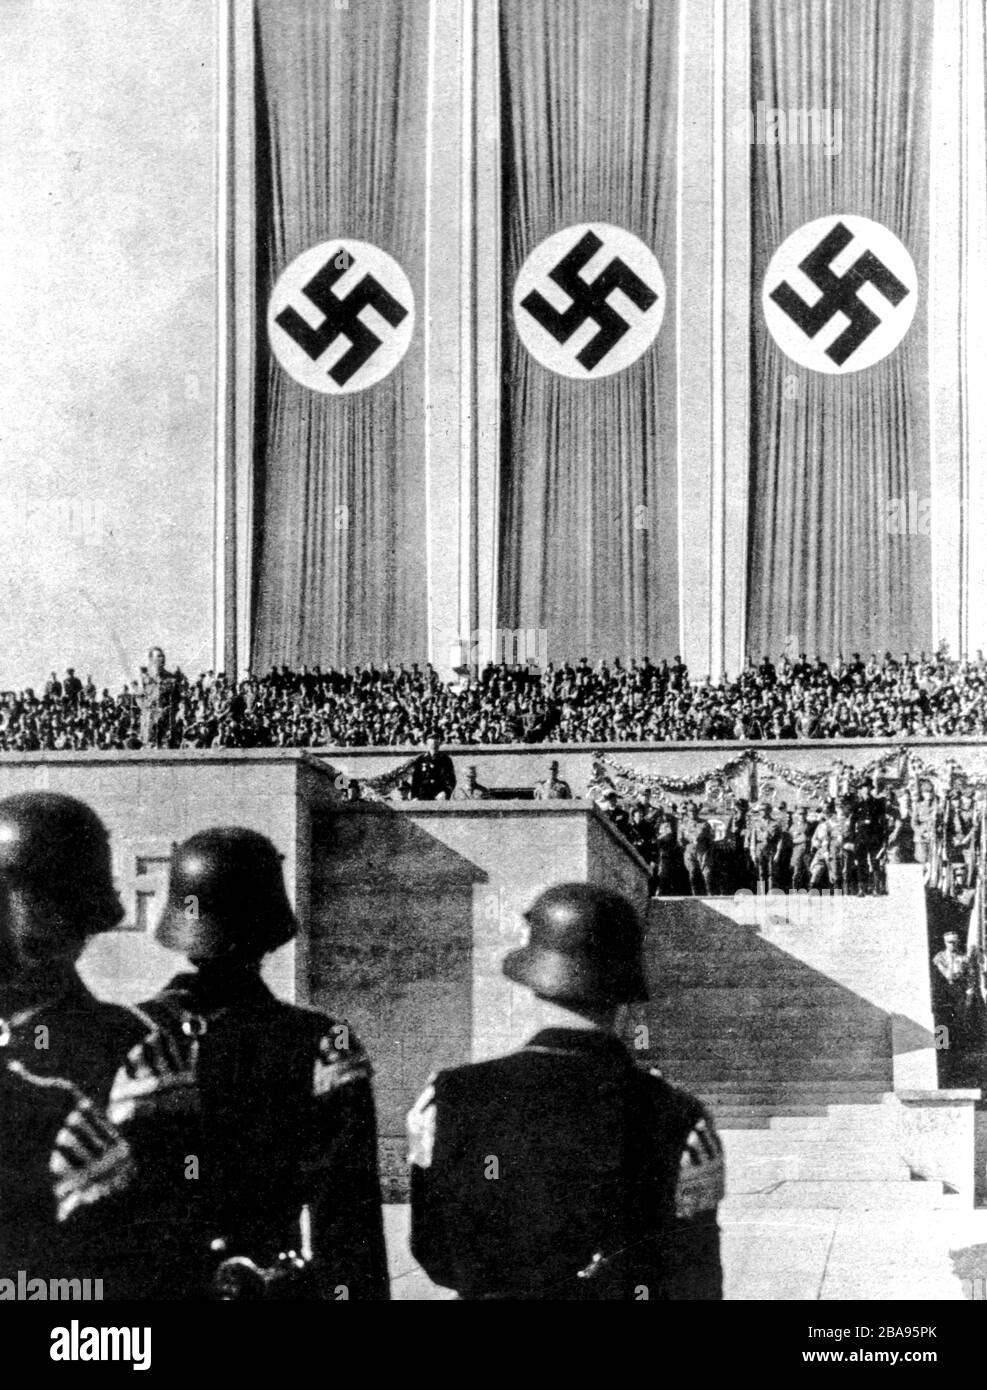 Hitler Youth Parade, Berlin, May 1, 1937 Stock Photo